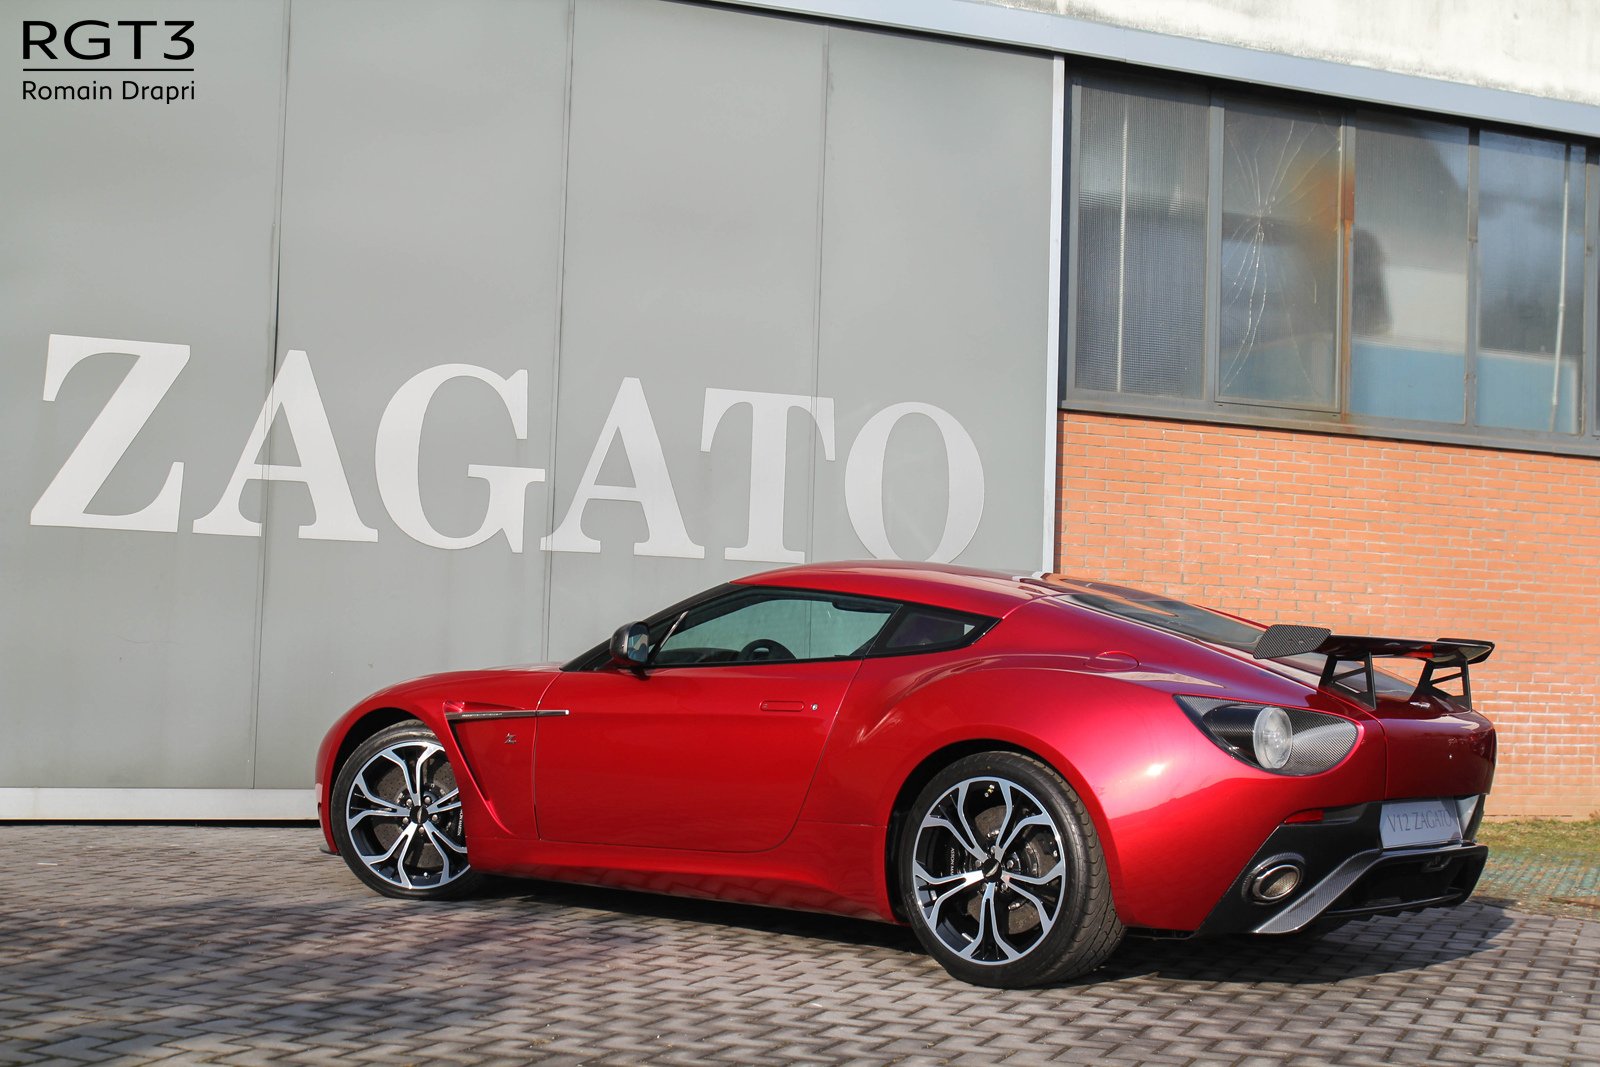 2011, Aston, Martin, V12, Zagato, Supercar, Sportcar, Coupe Wallpaper